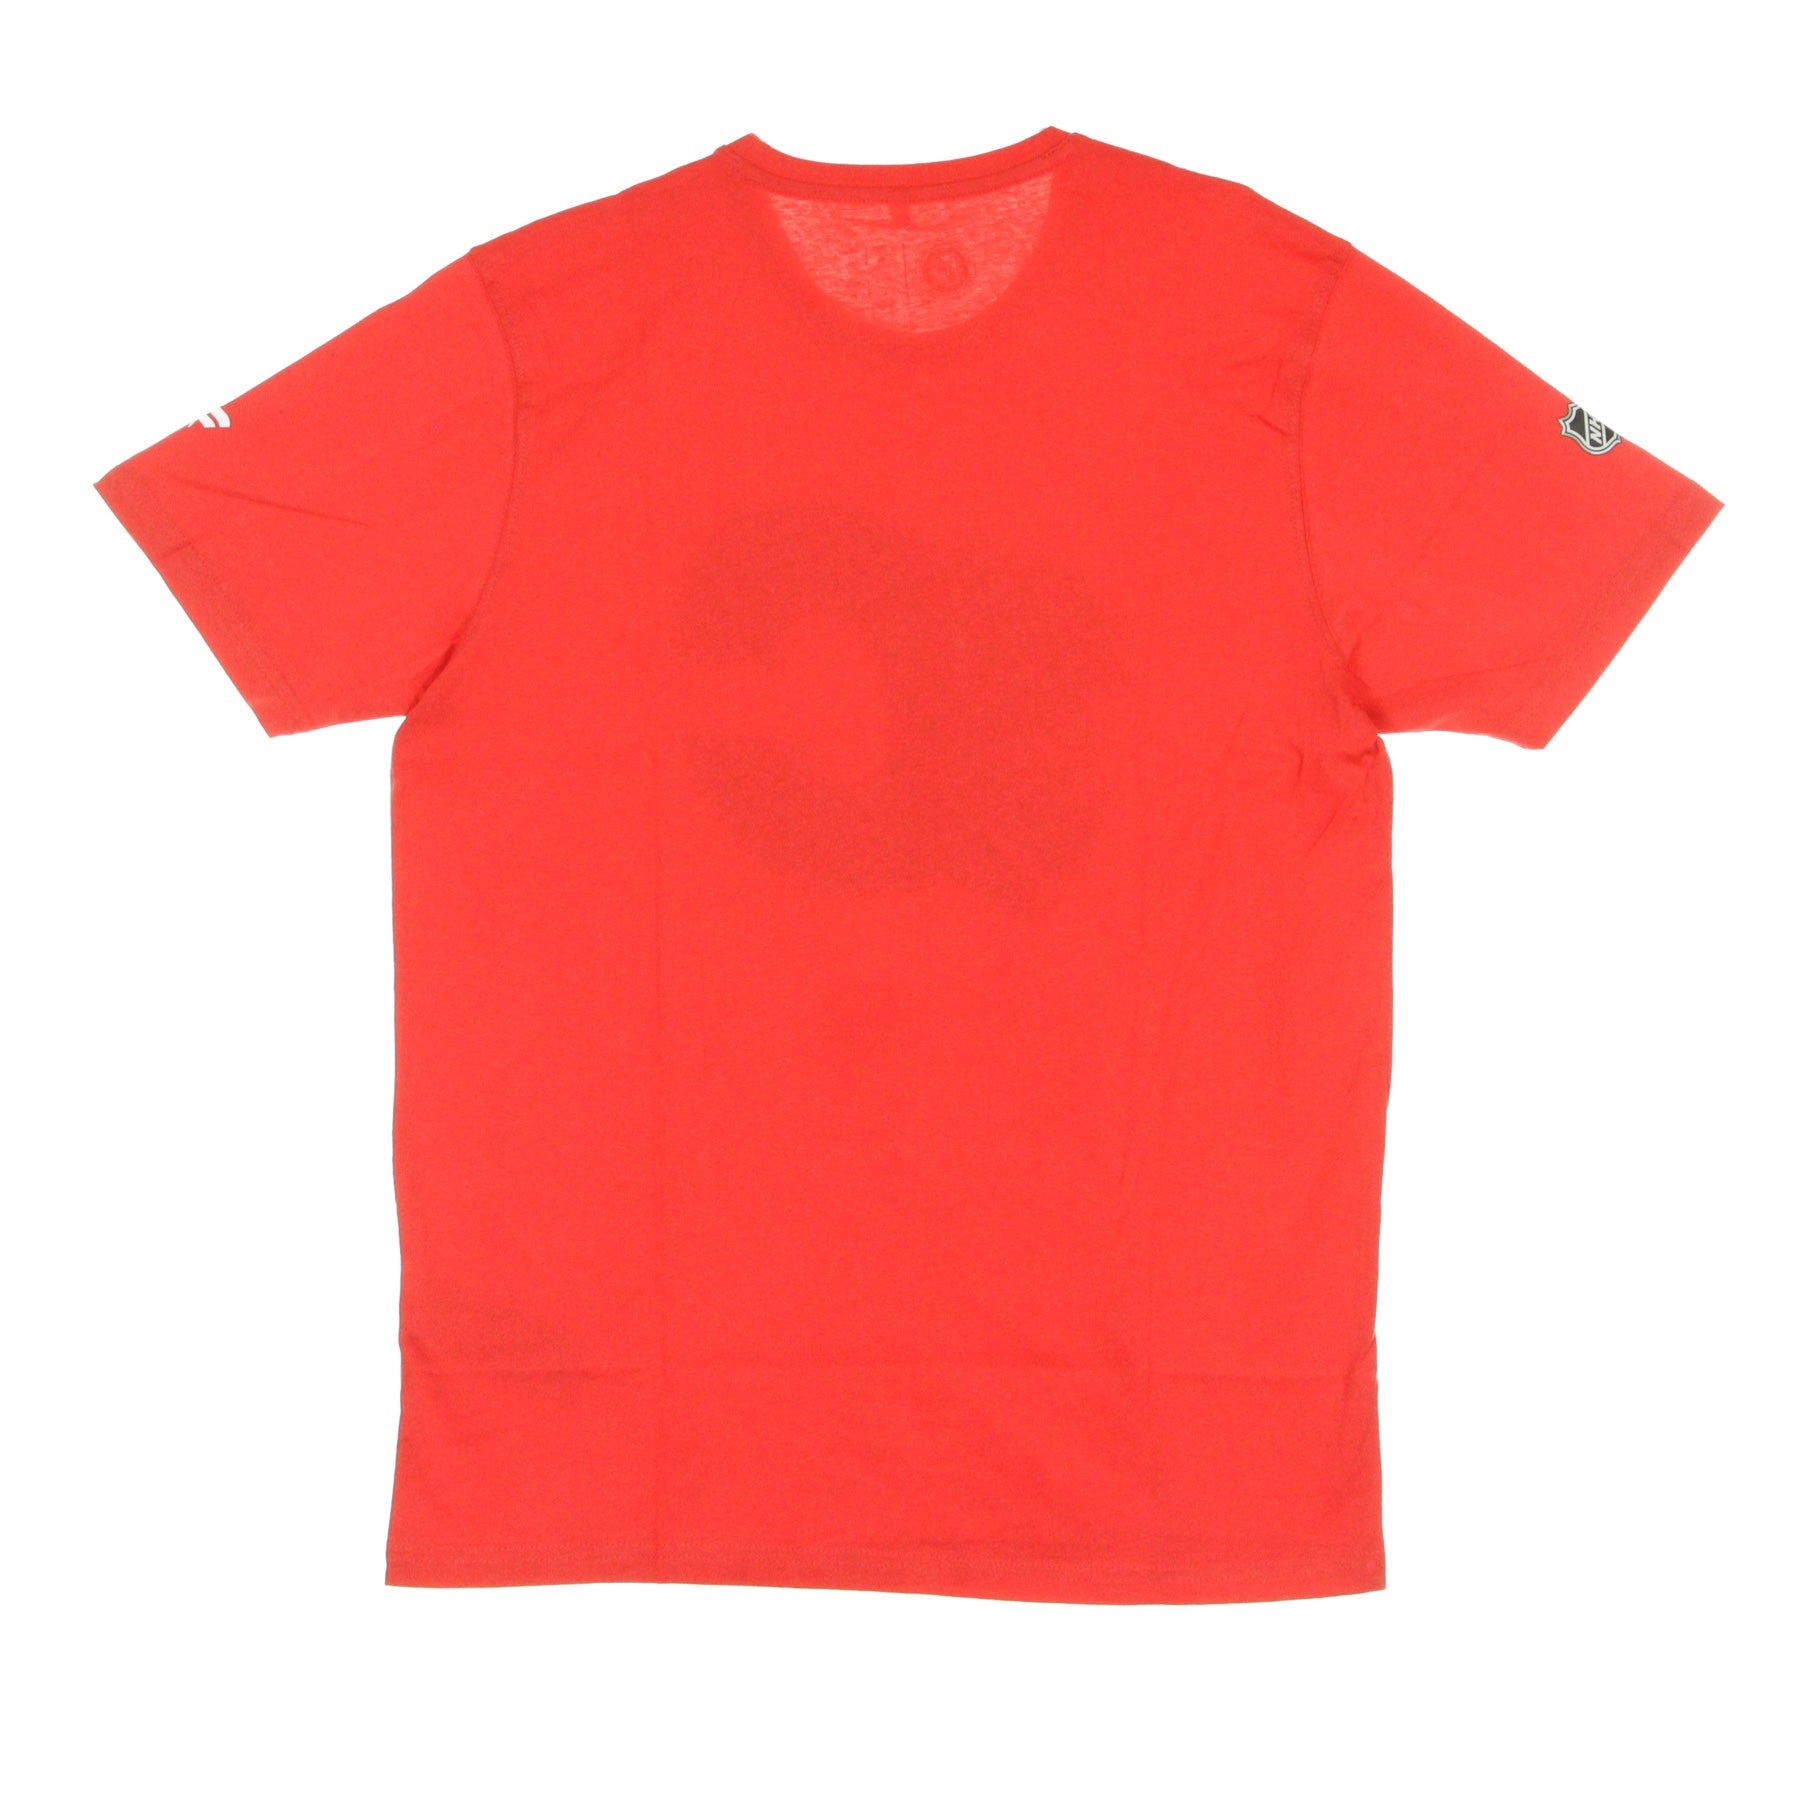 Fanatics Branded, Maglietta Uomo Nhl Iconic Primary Colour Logo Graphic T-shirt Calfla, 